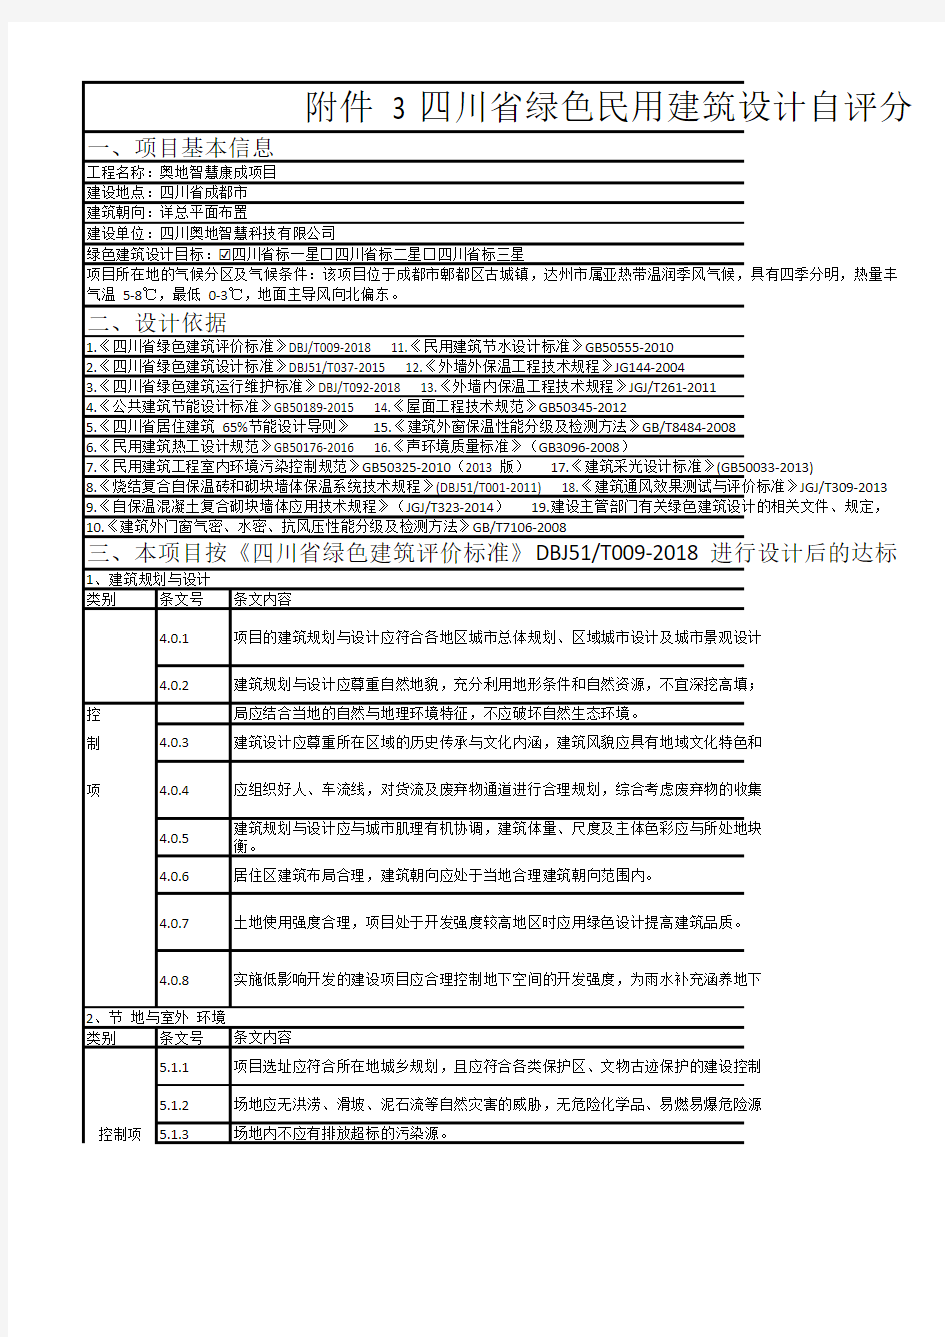 四川民用建筑绿色设计自评分表(2018版)